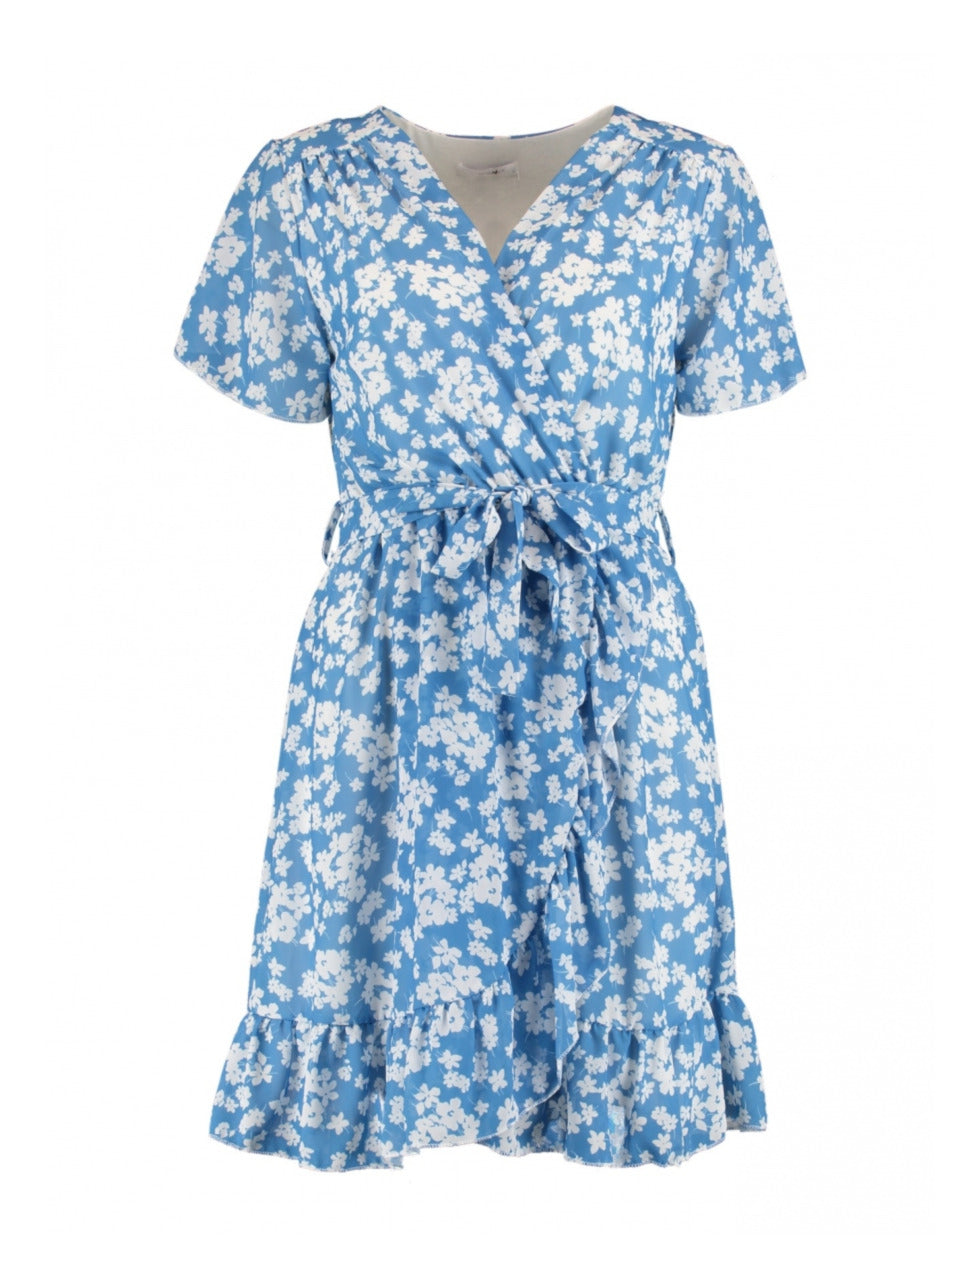 Sophie Summer Blue Floral Wrap Dress